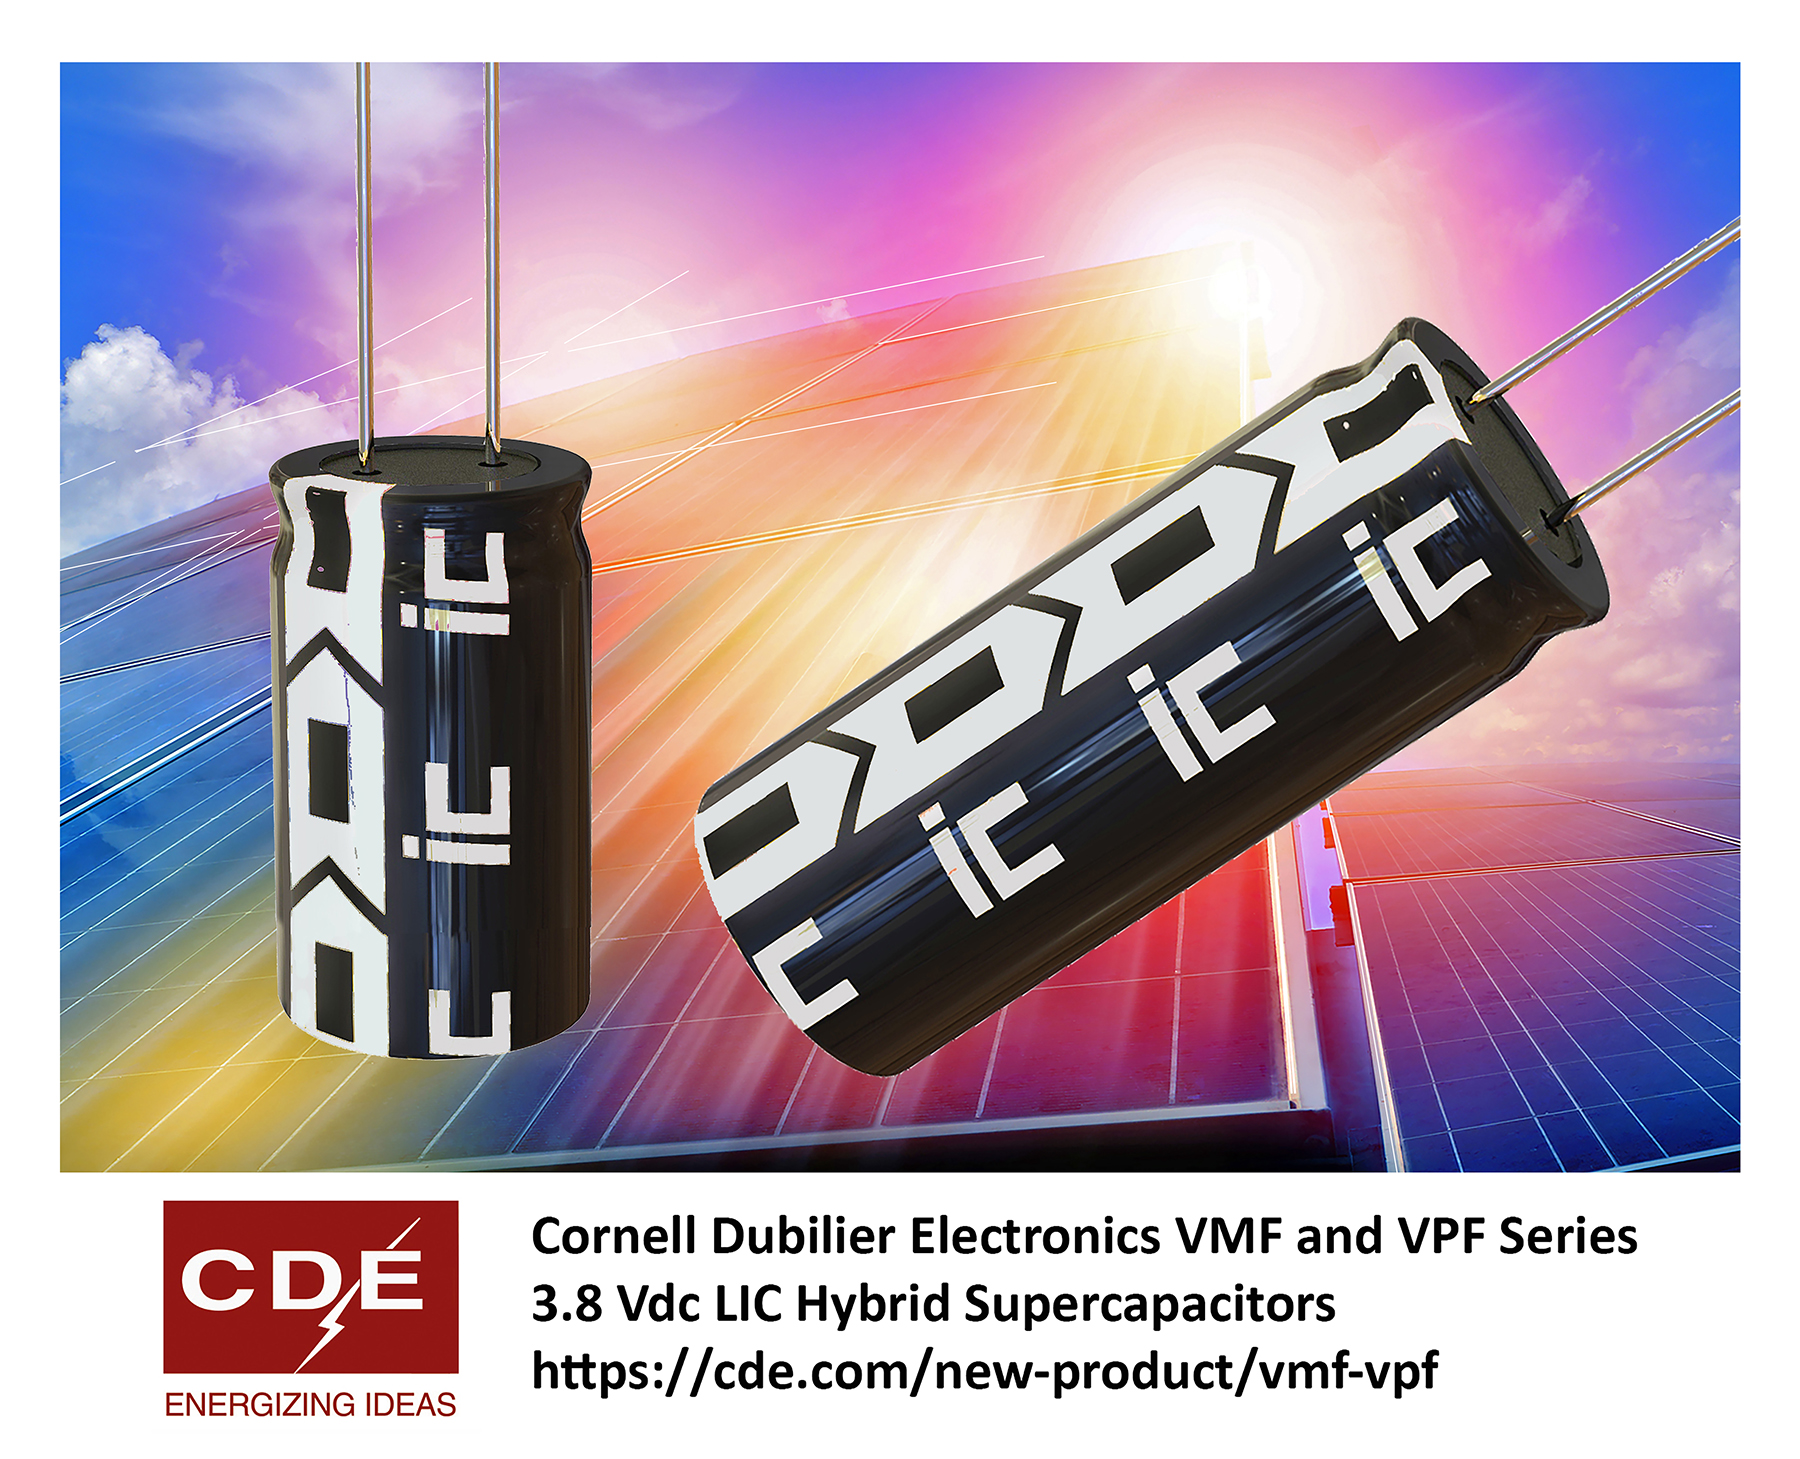 Hybrid Supercapacitors Deliver up to 220 Farads at 3.8 V